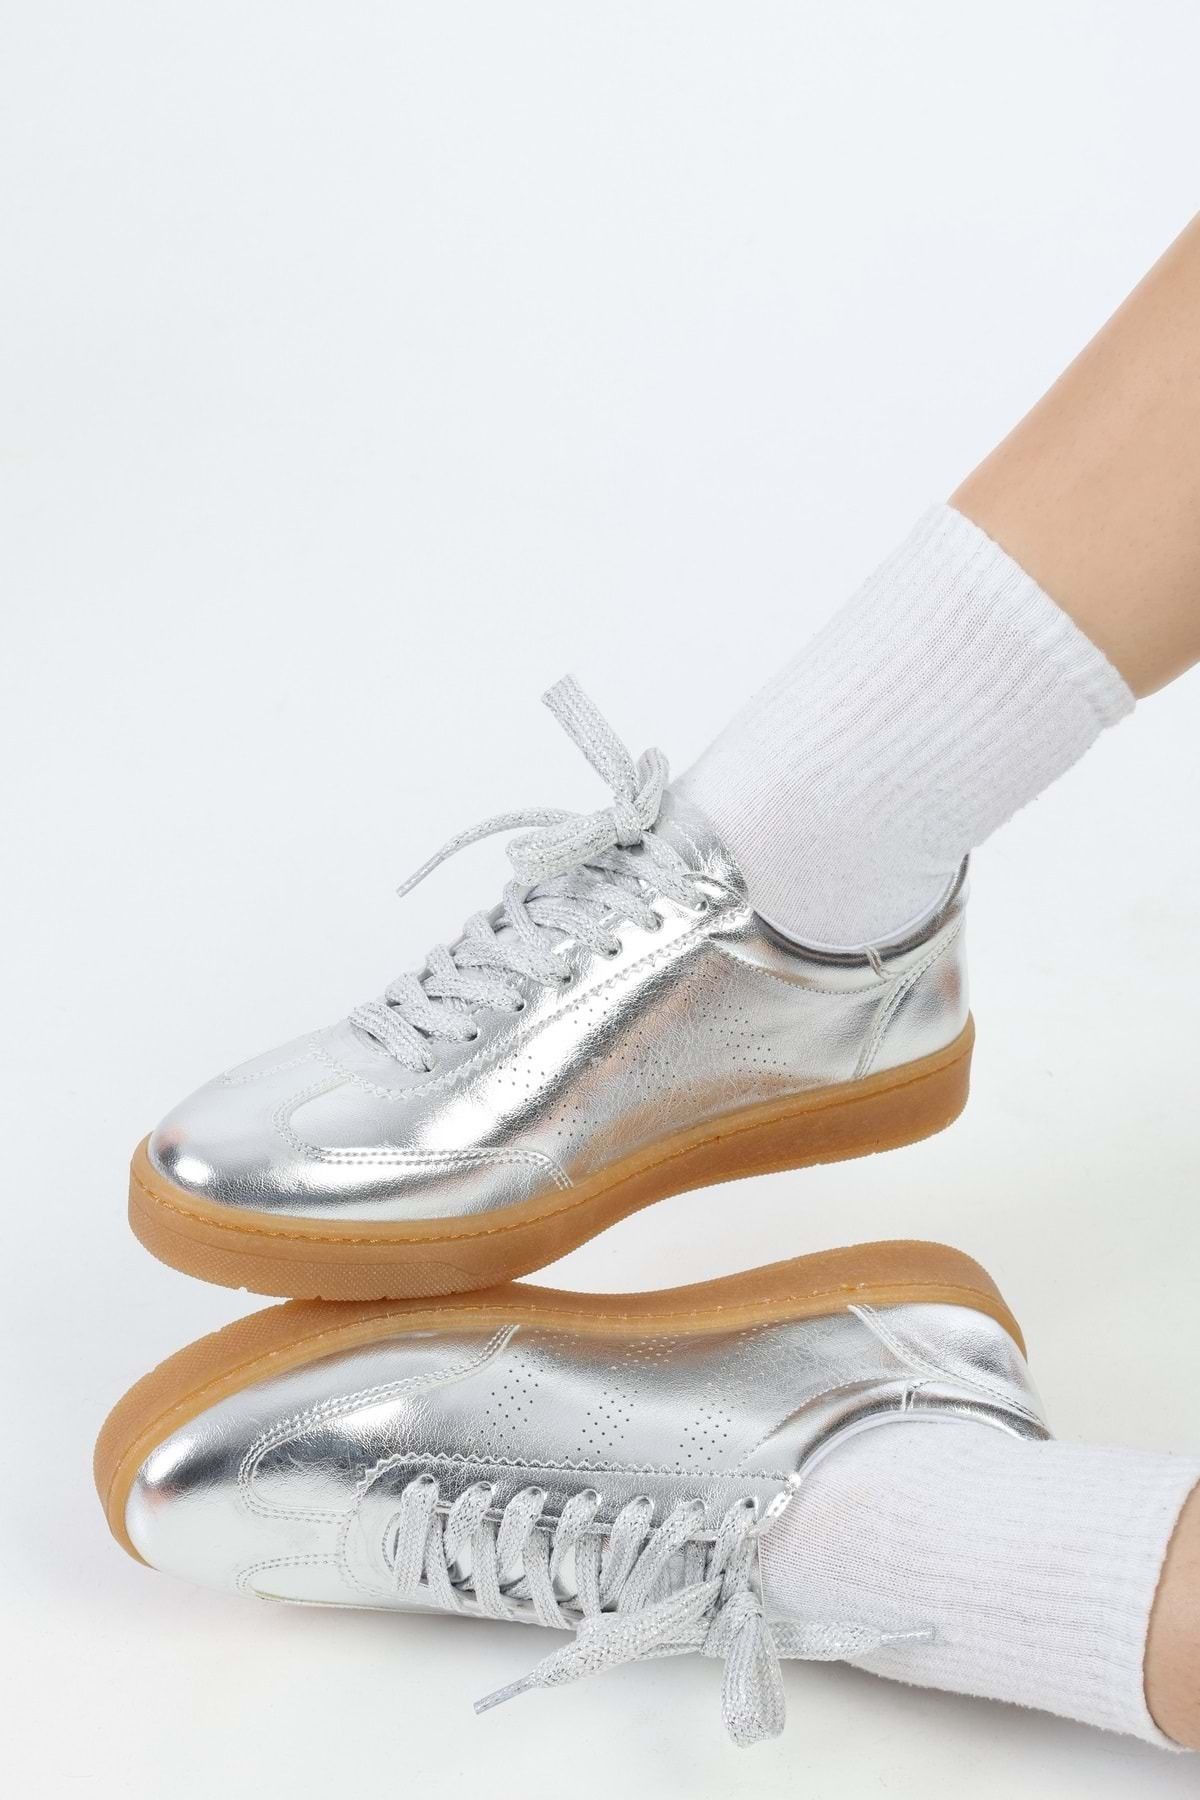 Shoeberry Kadın Campues Gümüş Metalik Düz Spor Ayakkabı